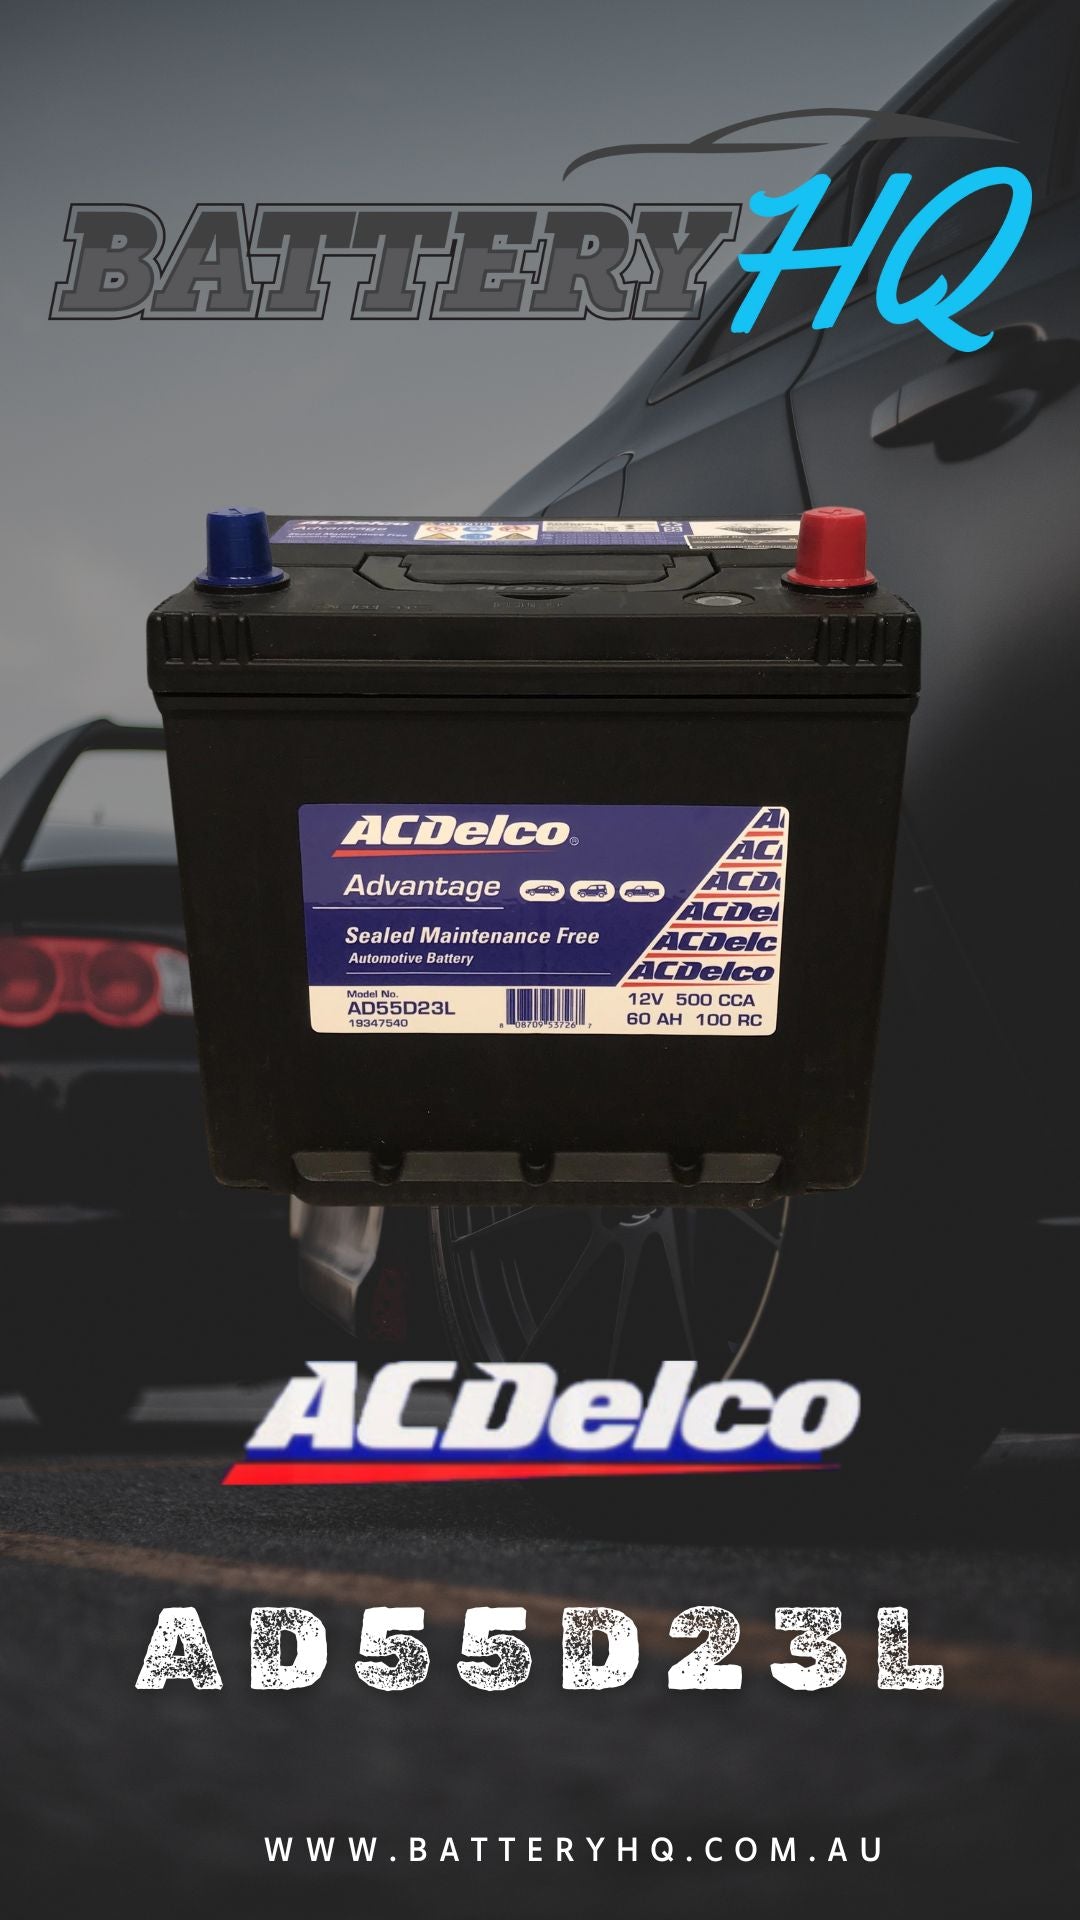 AD55D23L AC Delco Advantage